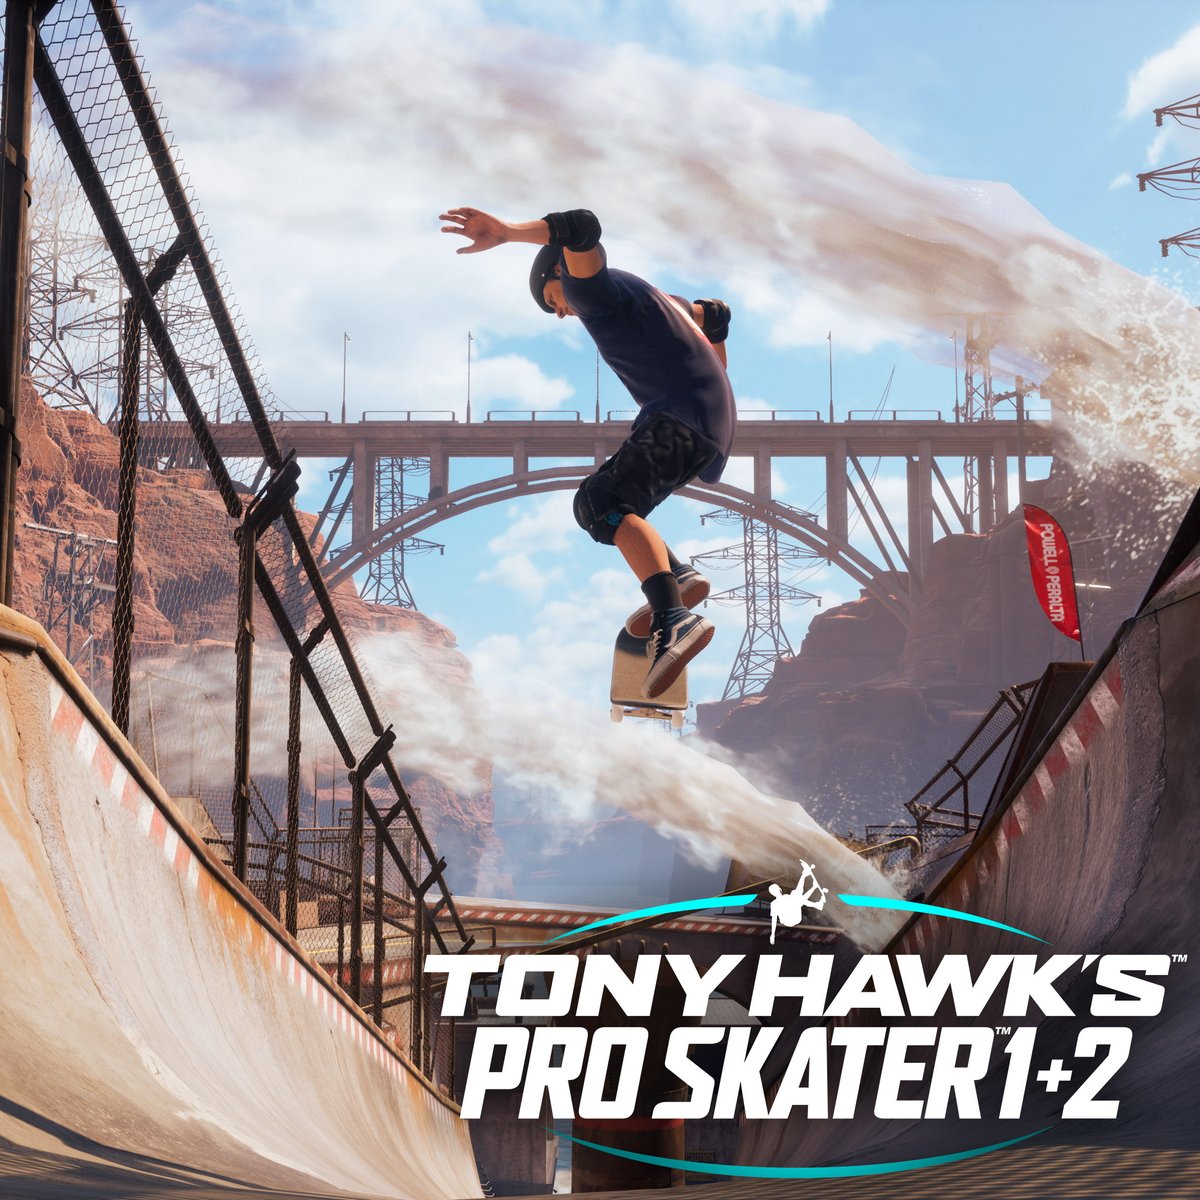 Tony Hawk's Pro Skater 1+2 достиг миллиона проданных копий — быстрее всех частей серии